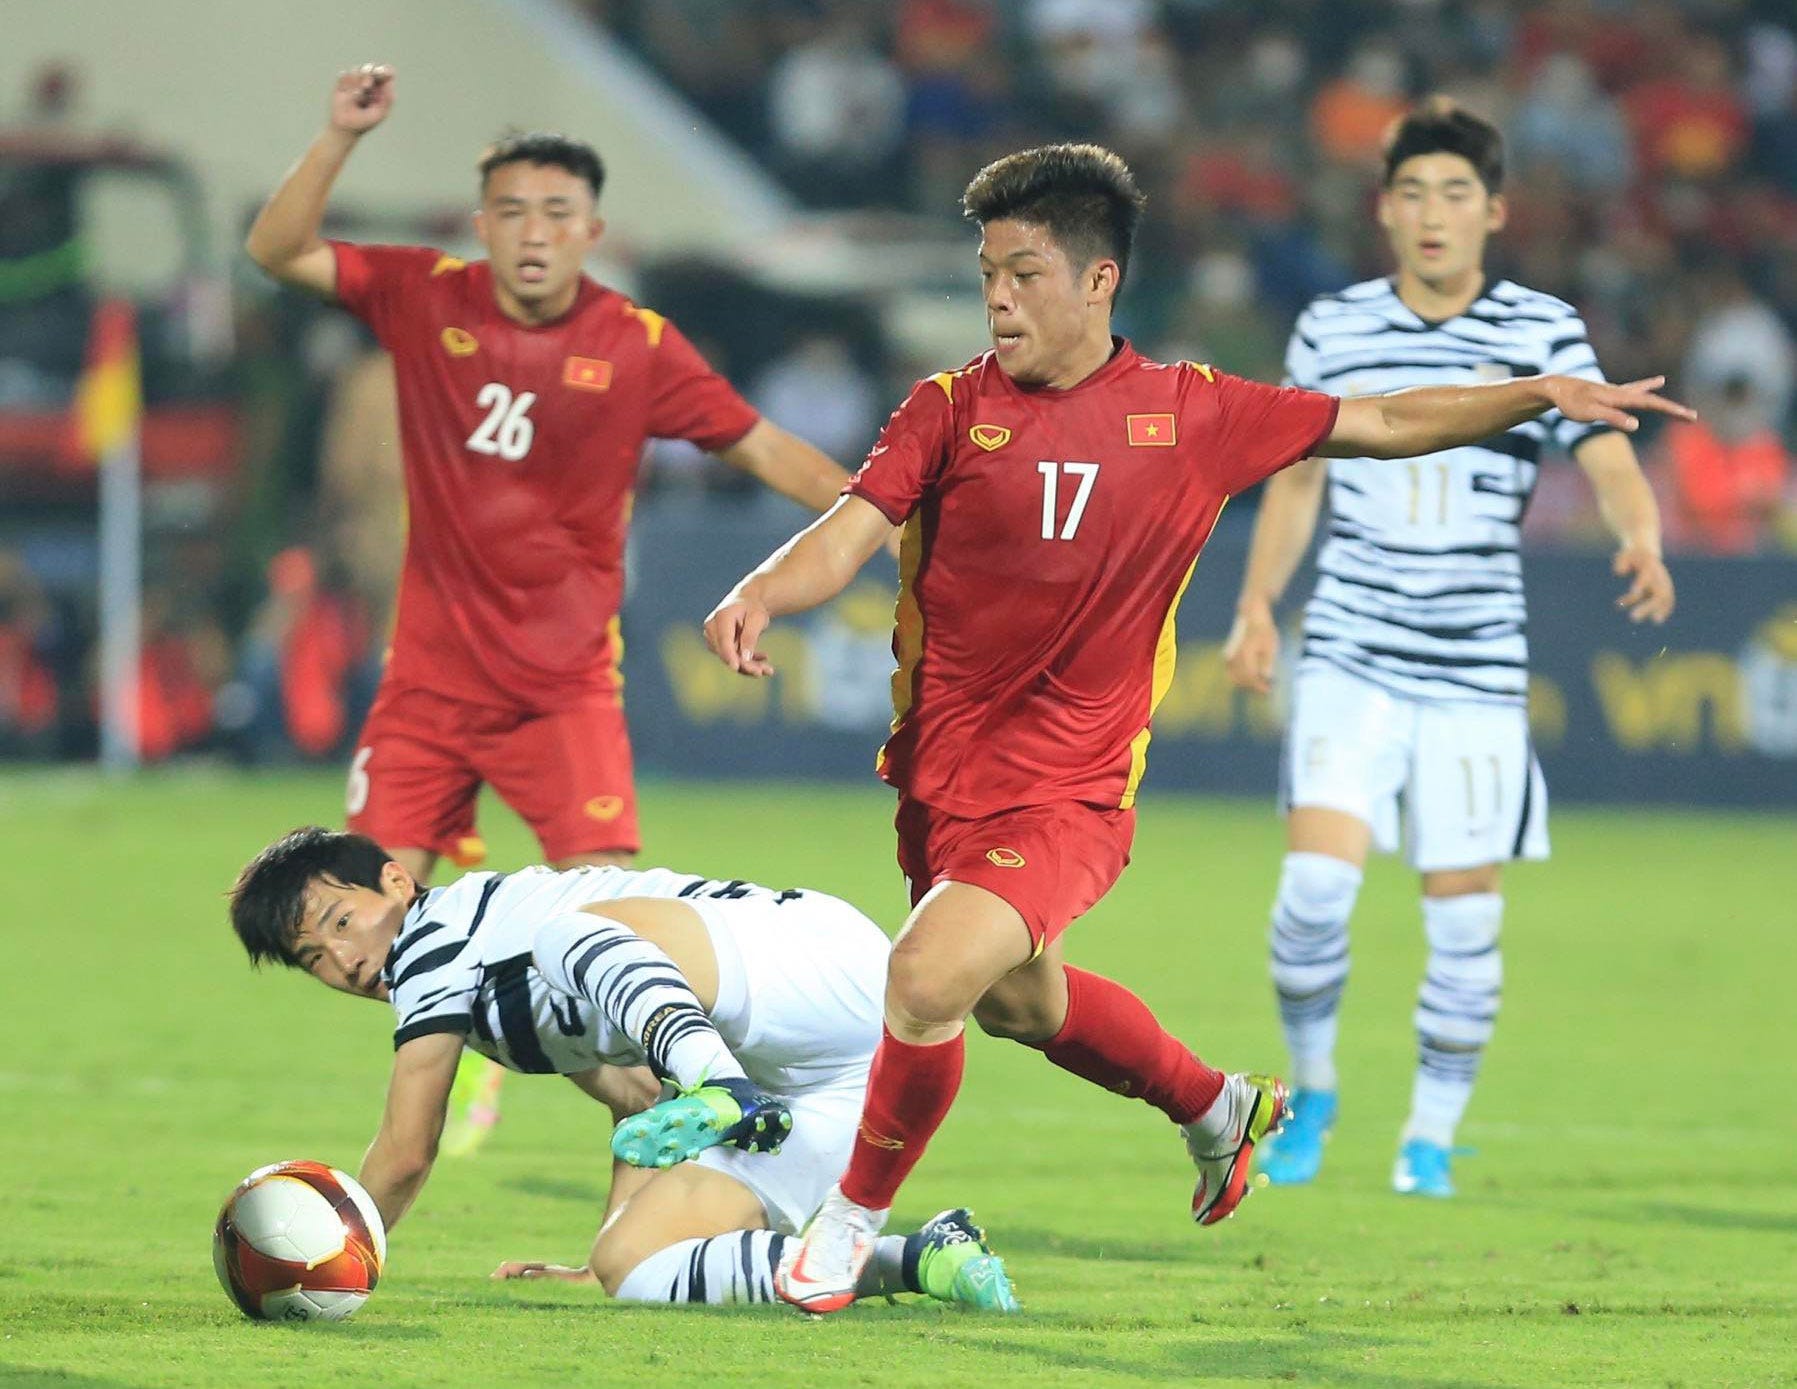 U23 Vietnam U20 South korea 4